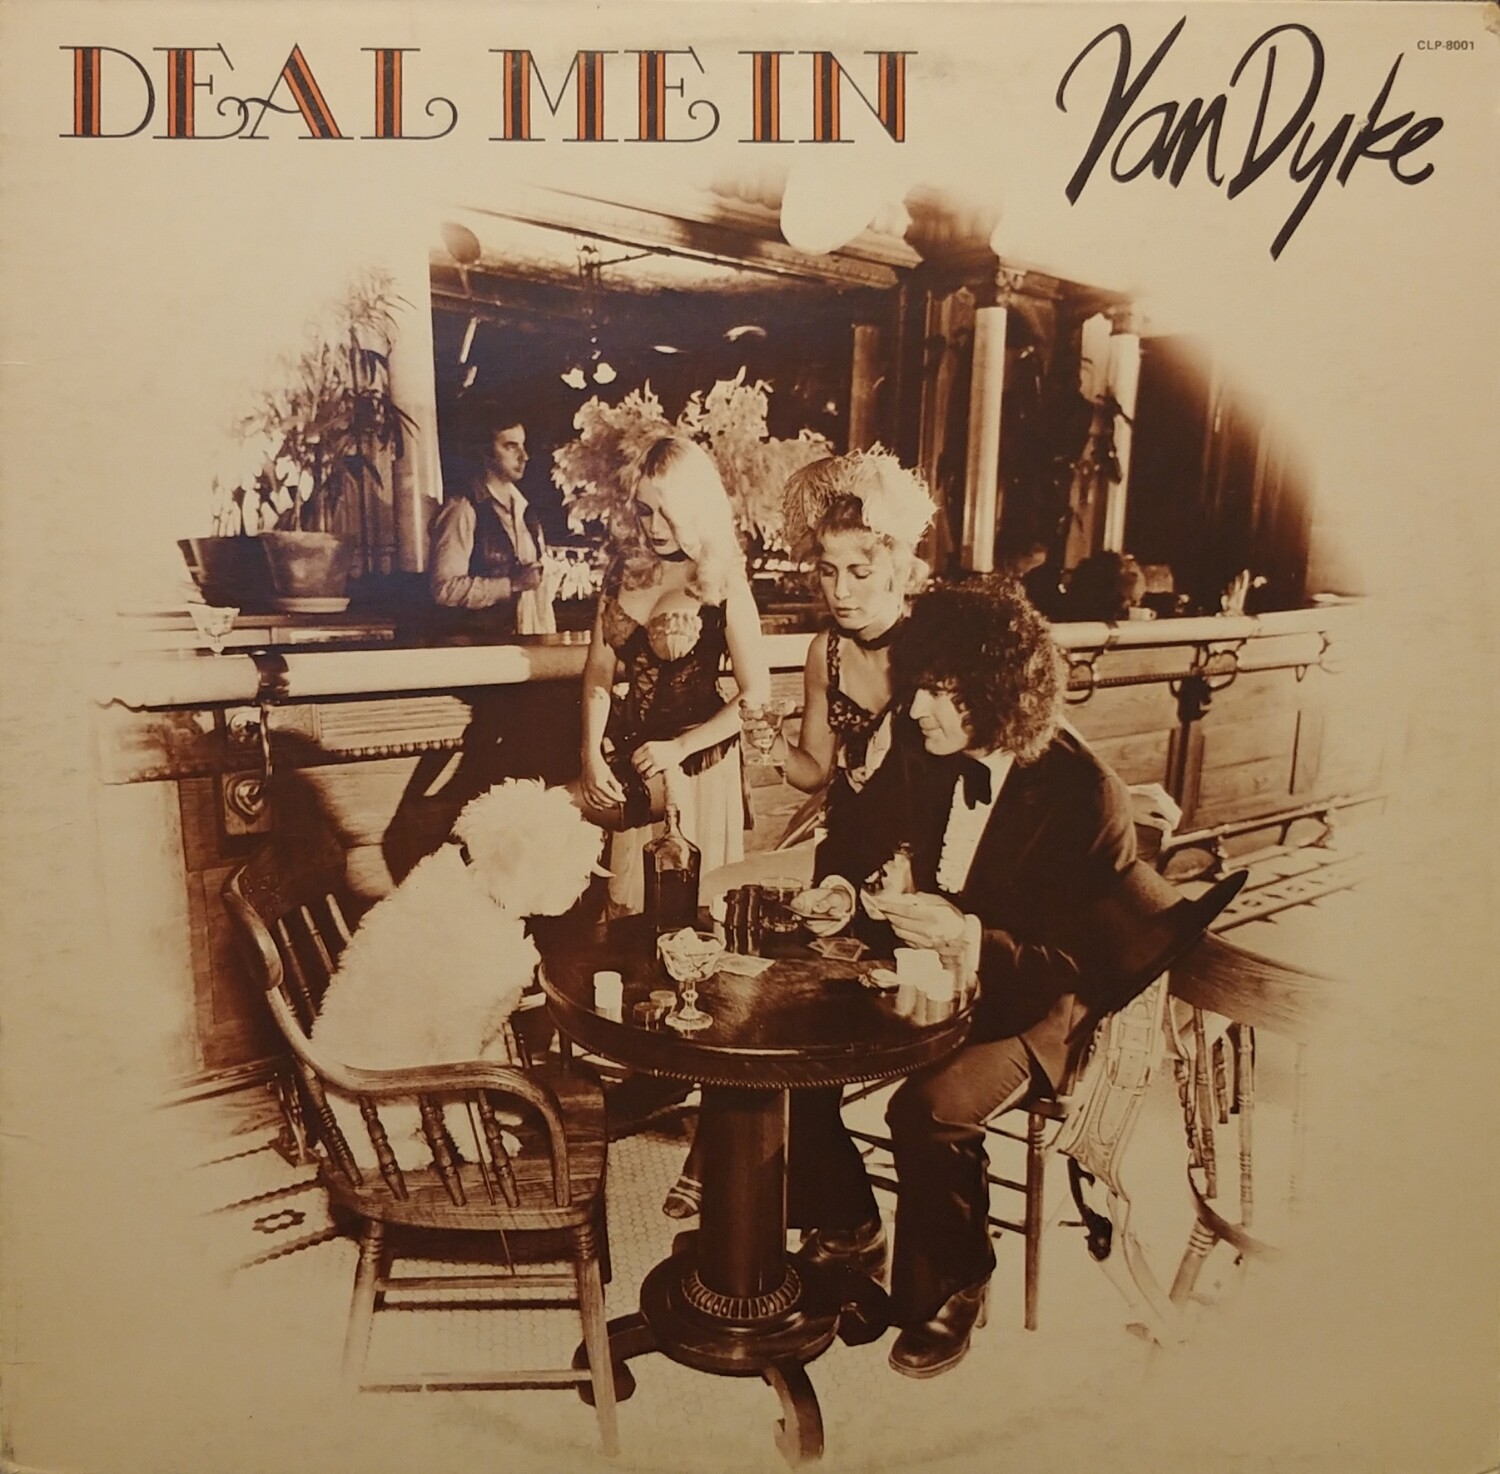 Van Dyke - Deal me in